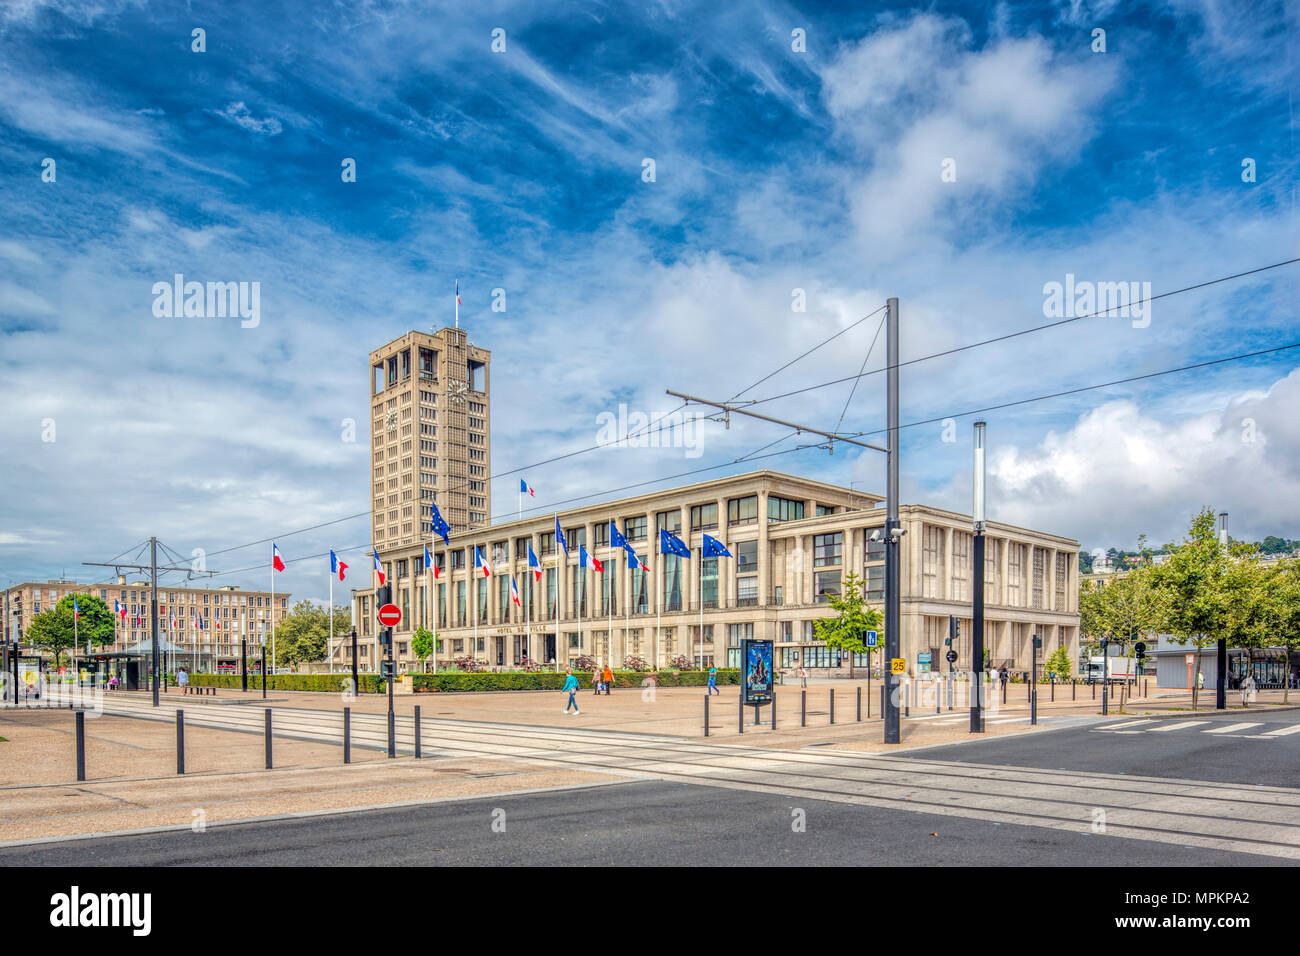 Hotel de Ville (City Hall), Le Havre, France. Stock Photo